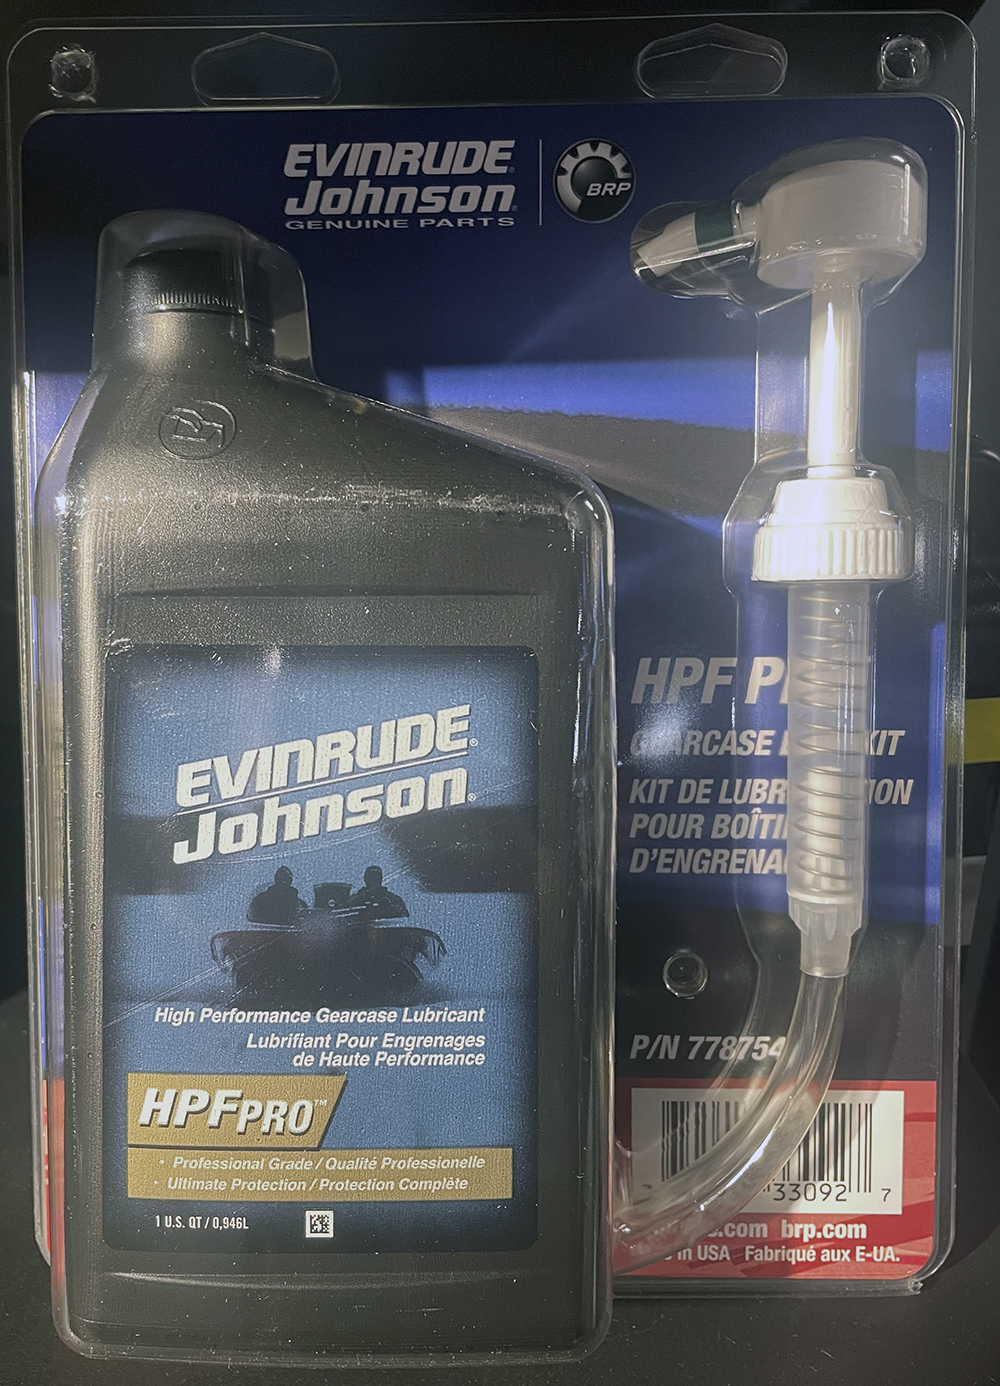 HPF PRO Växelhusolja Evinrude Johnson 946 ml inkl pump